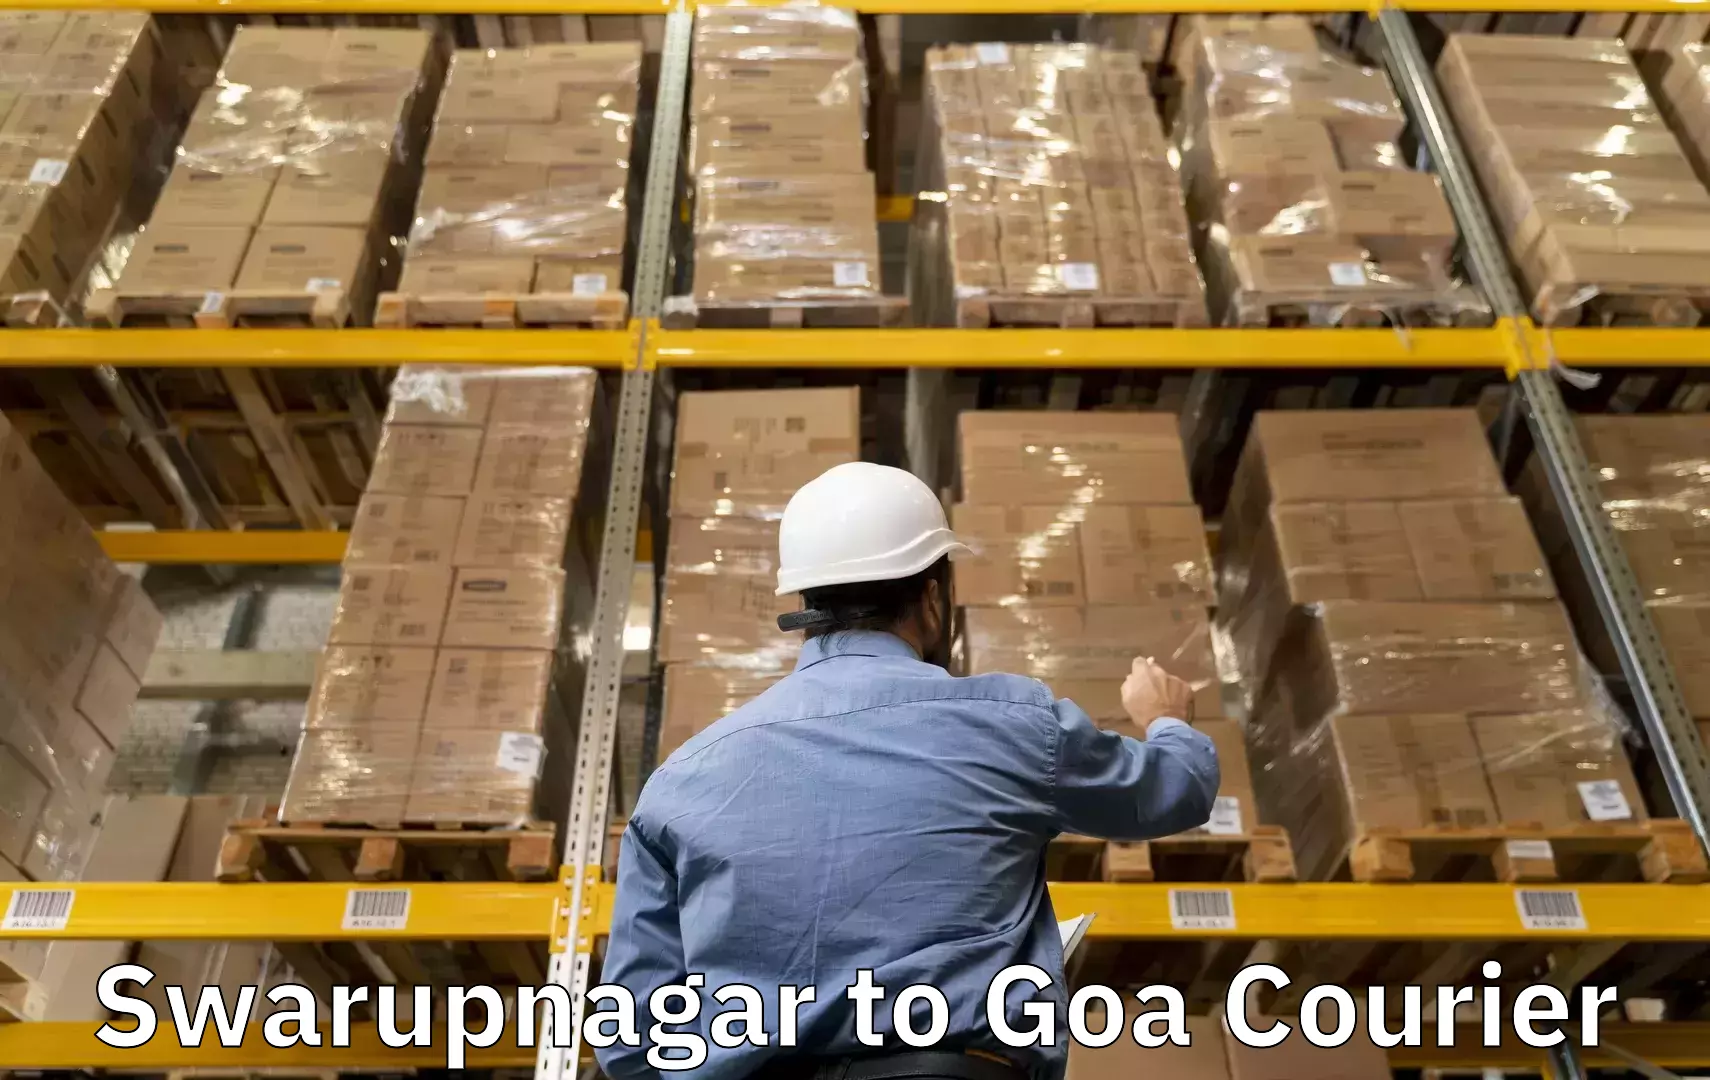 Luggage delivery rates Swarupnagar to Canacona